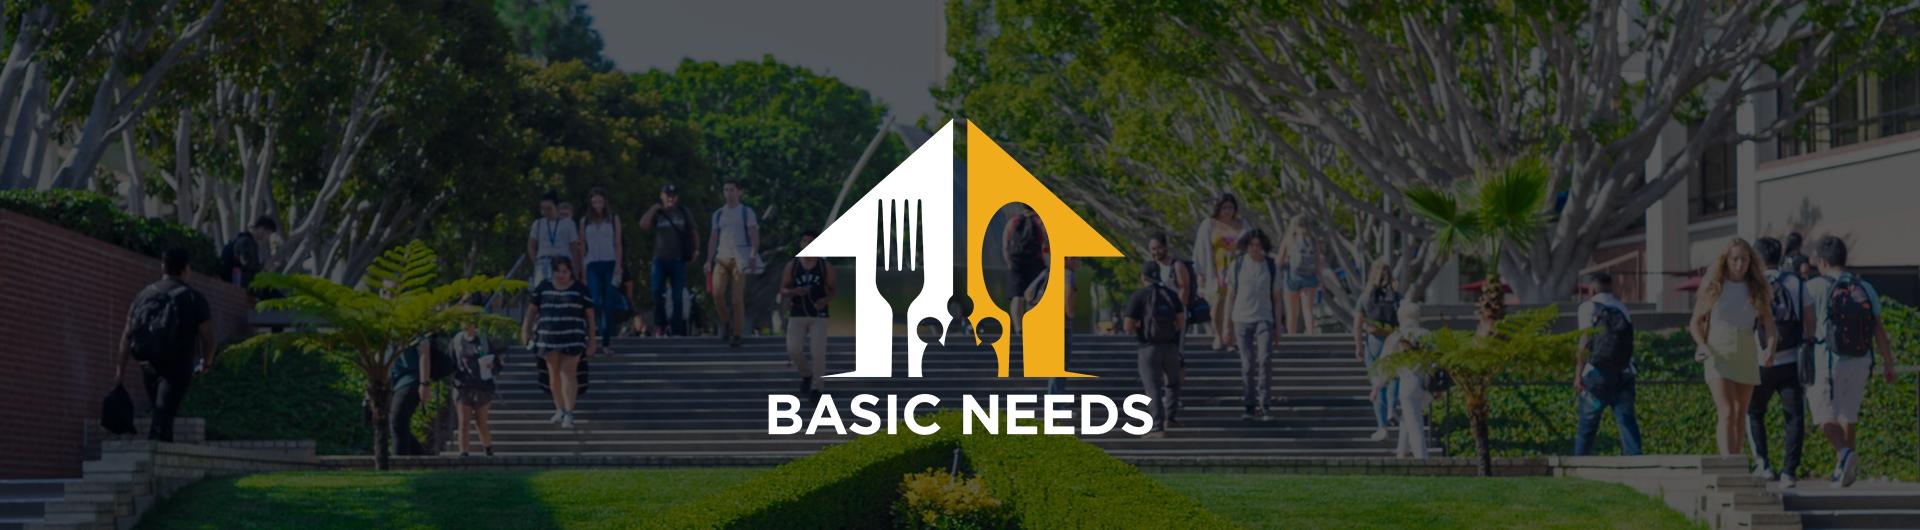 Basic Needs Banner